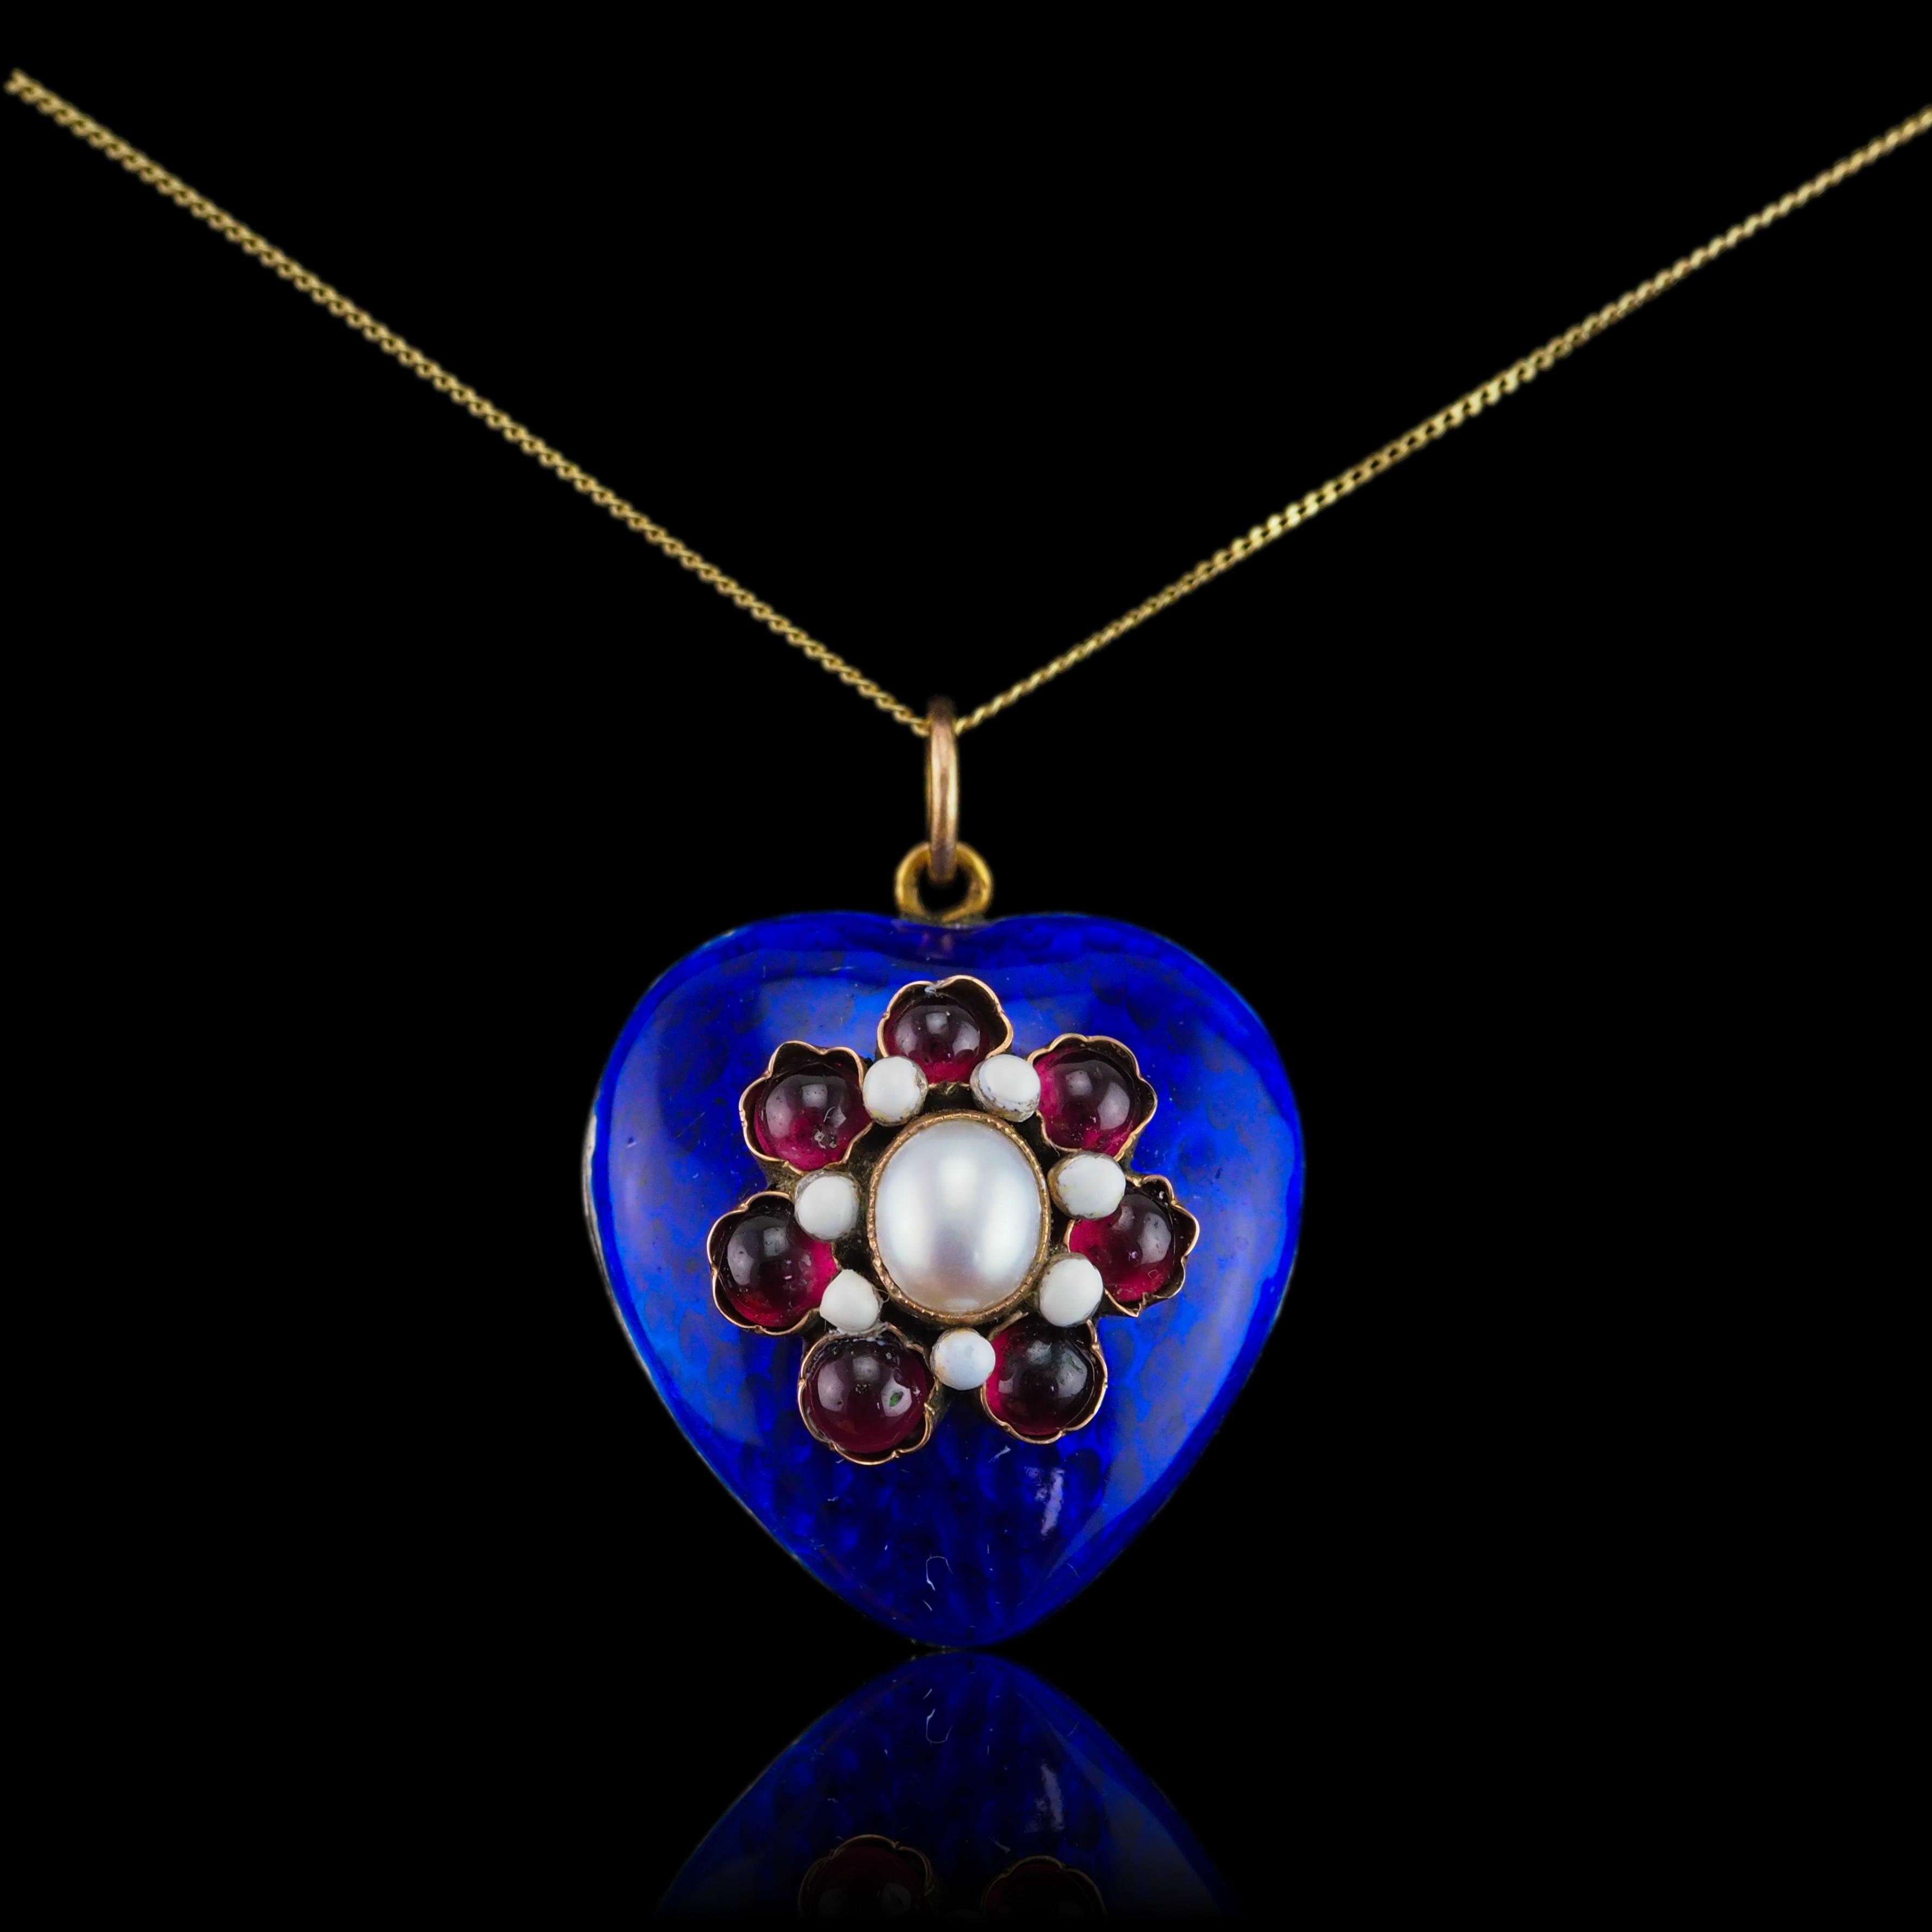 Antique Victorian Blue Enamel Garnet Heart Necklace 'Puffy' Pendant - c.1900 For Sale 6